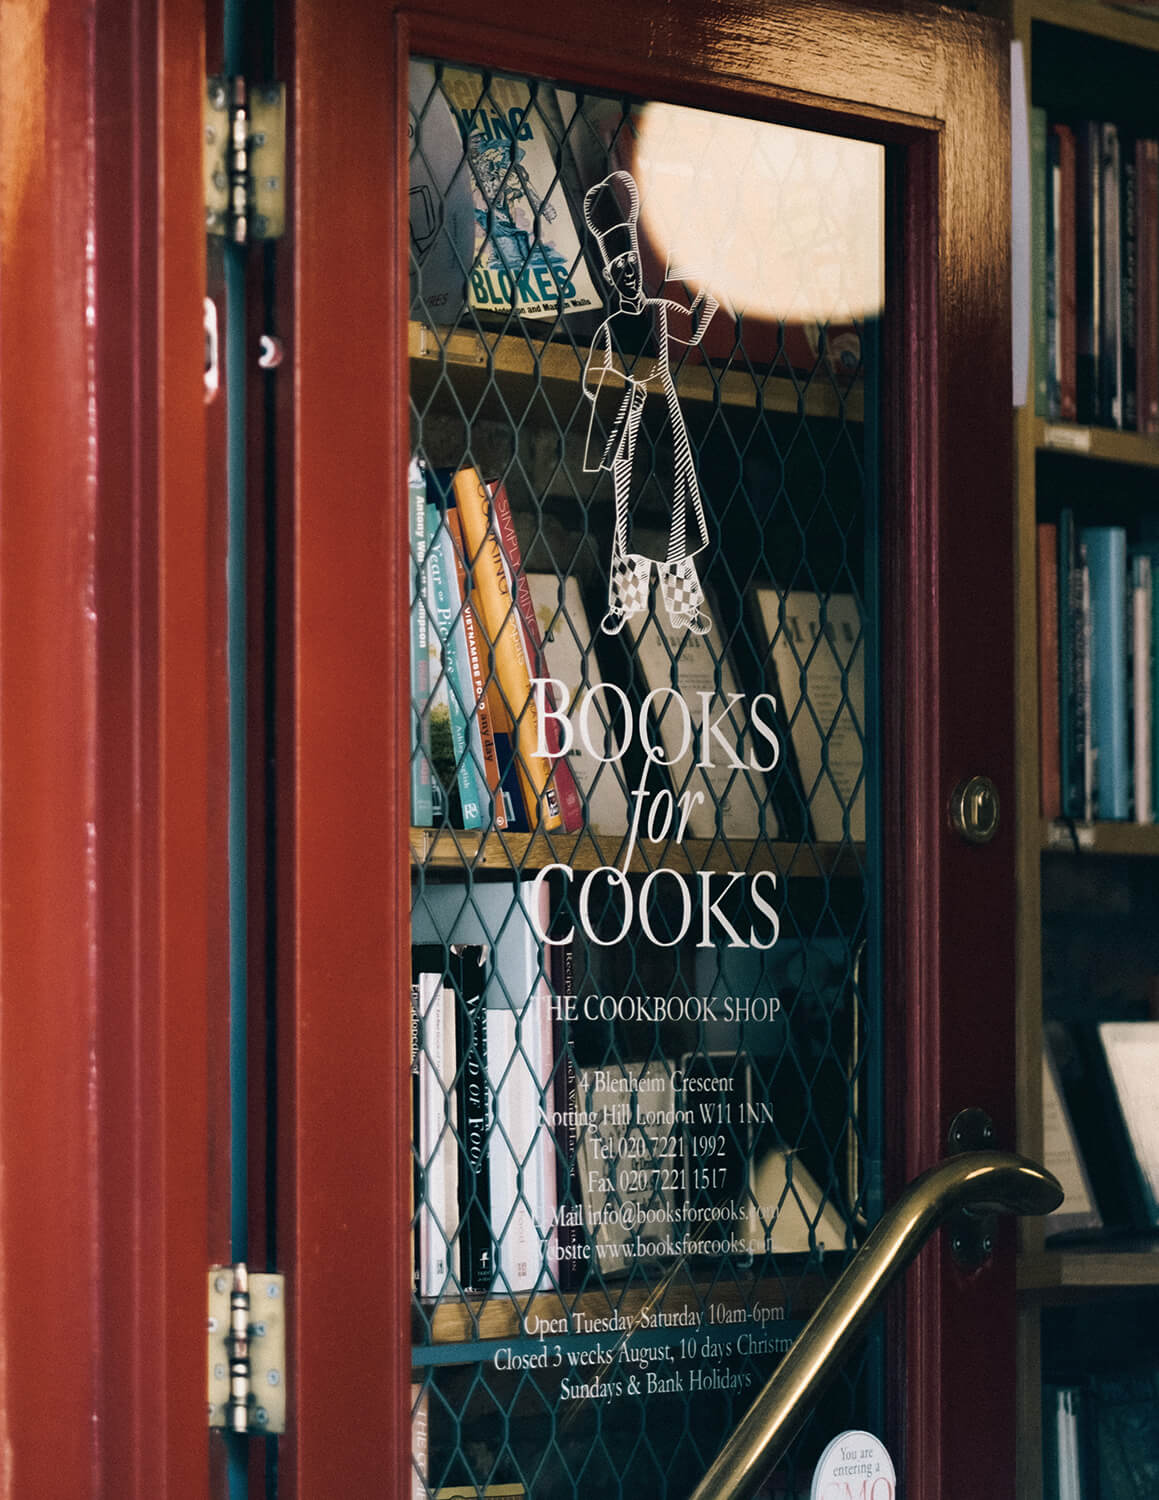 逛完全球最「好吃」的書店，再到水上餐廳吃起司！跟著倫敦男子探索英倫的美好_圖6.jpg